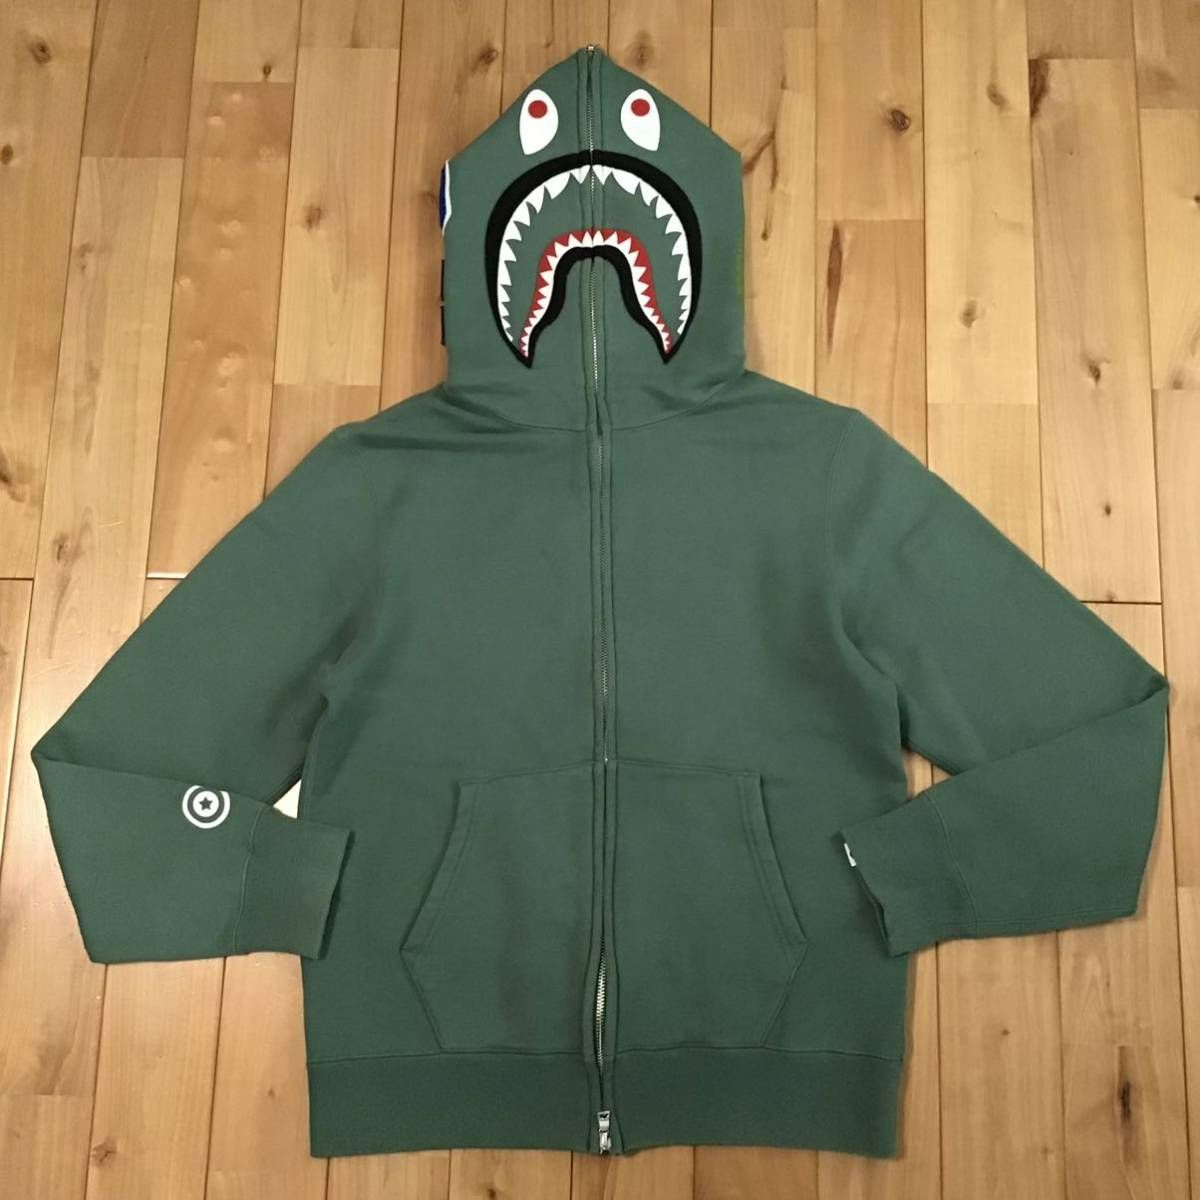 シャーク パーカー Mサイズ Green shark full zip hoodie a bathing